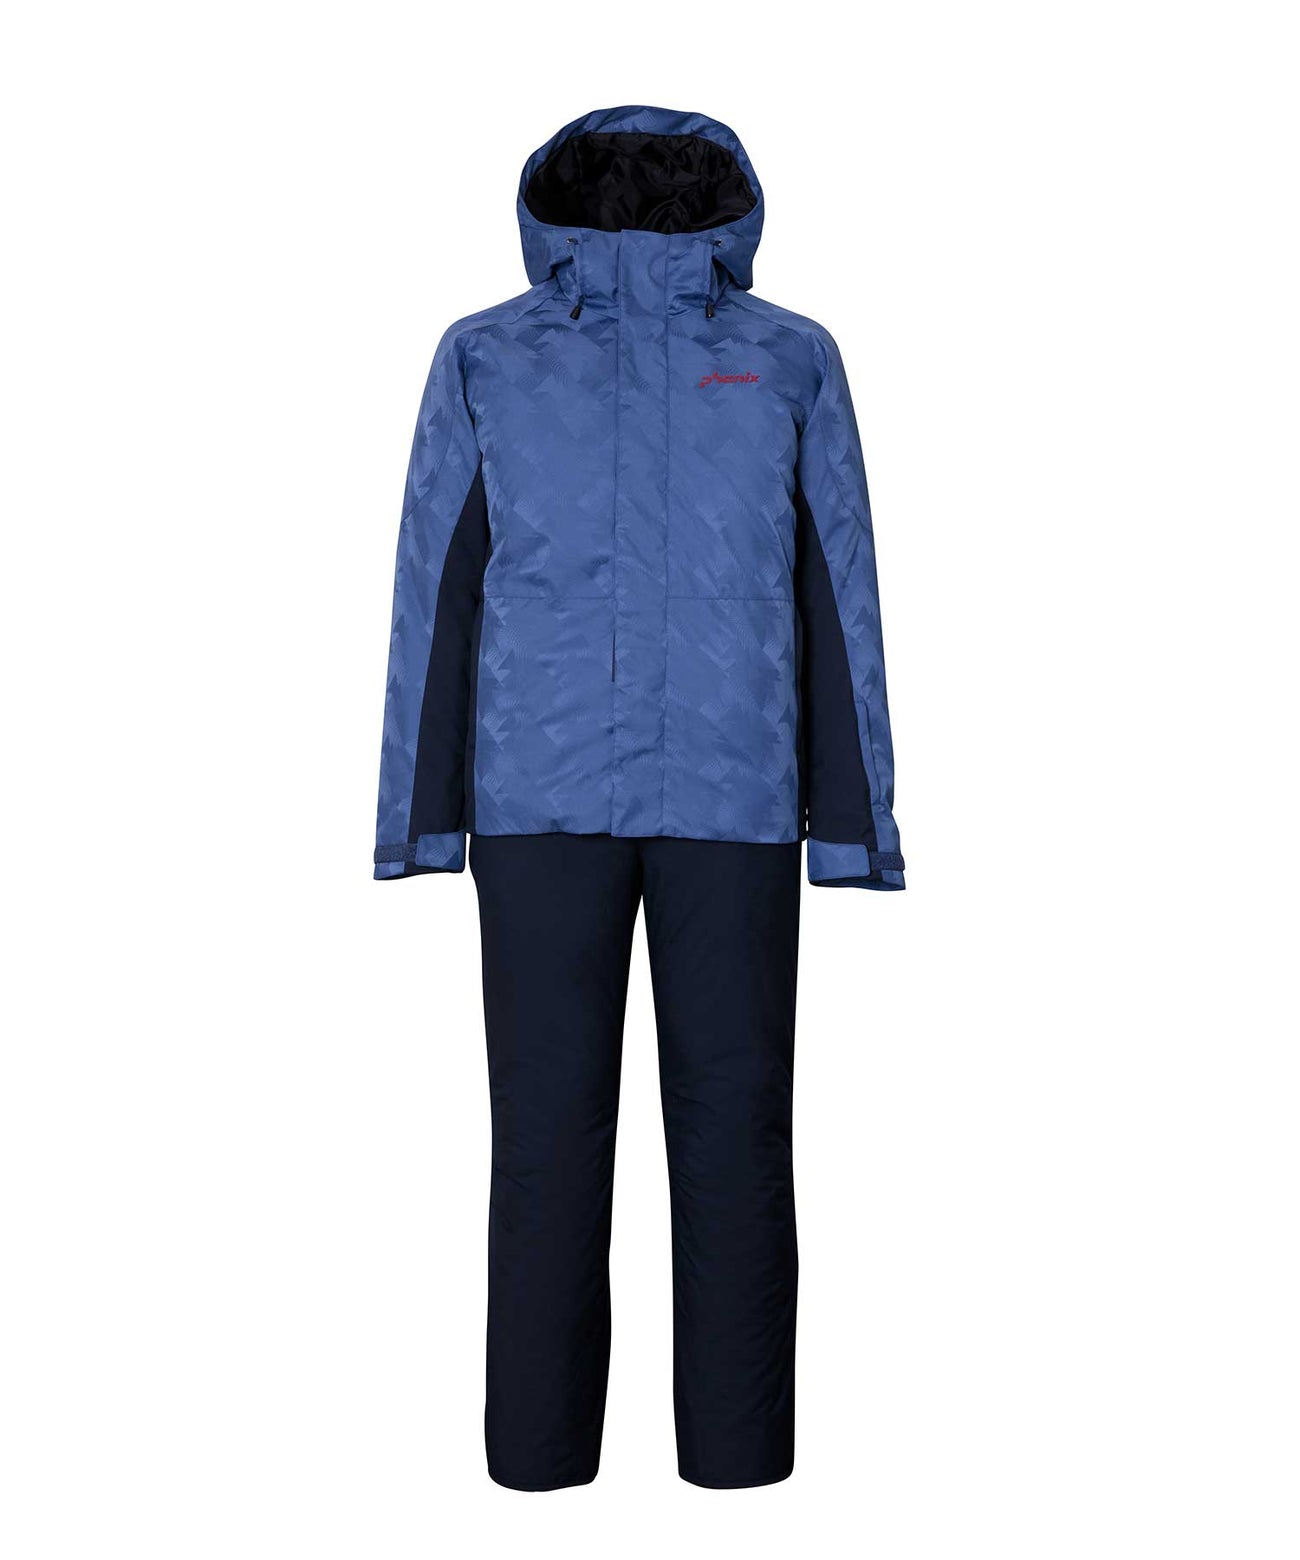 日本代购phenix菲尼克斯新款迷彩提花滑雪服套装男户外保暖冲锋衣 - 图2